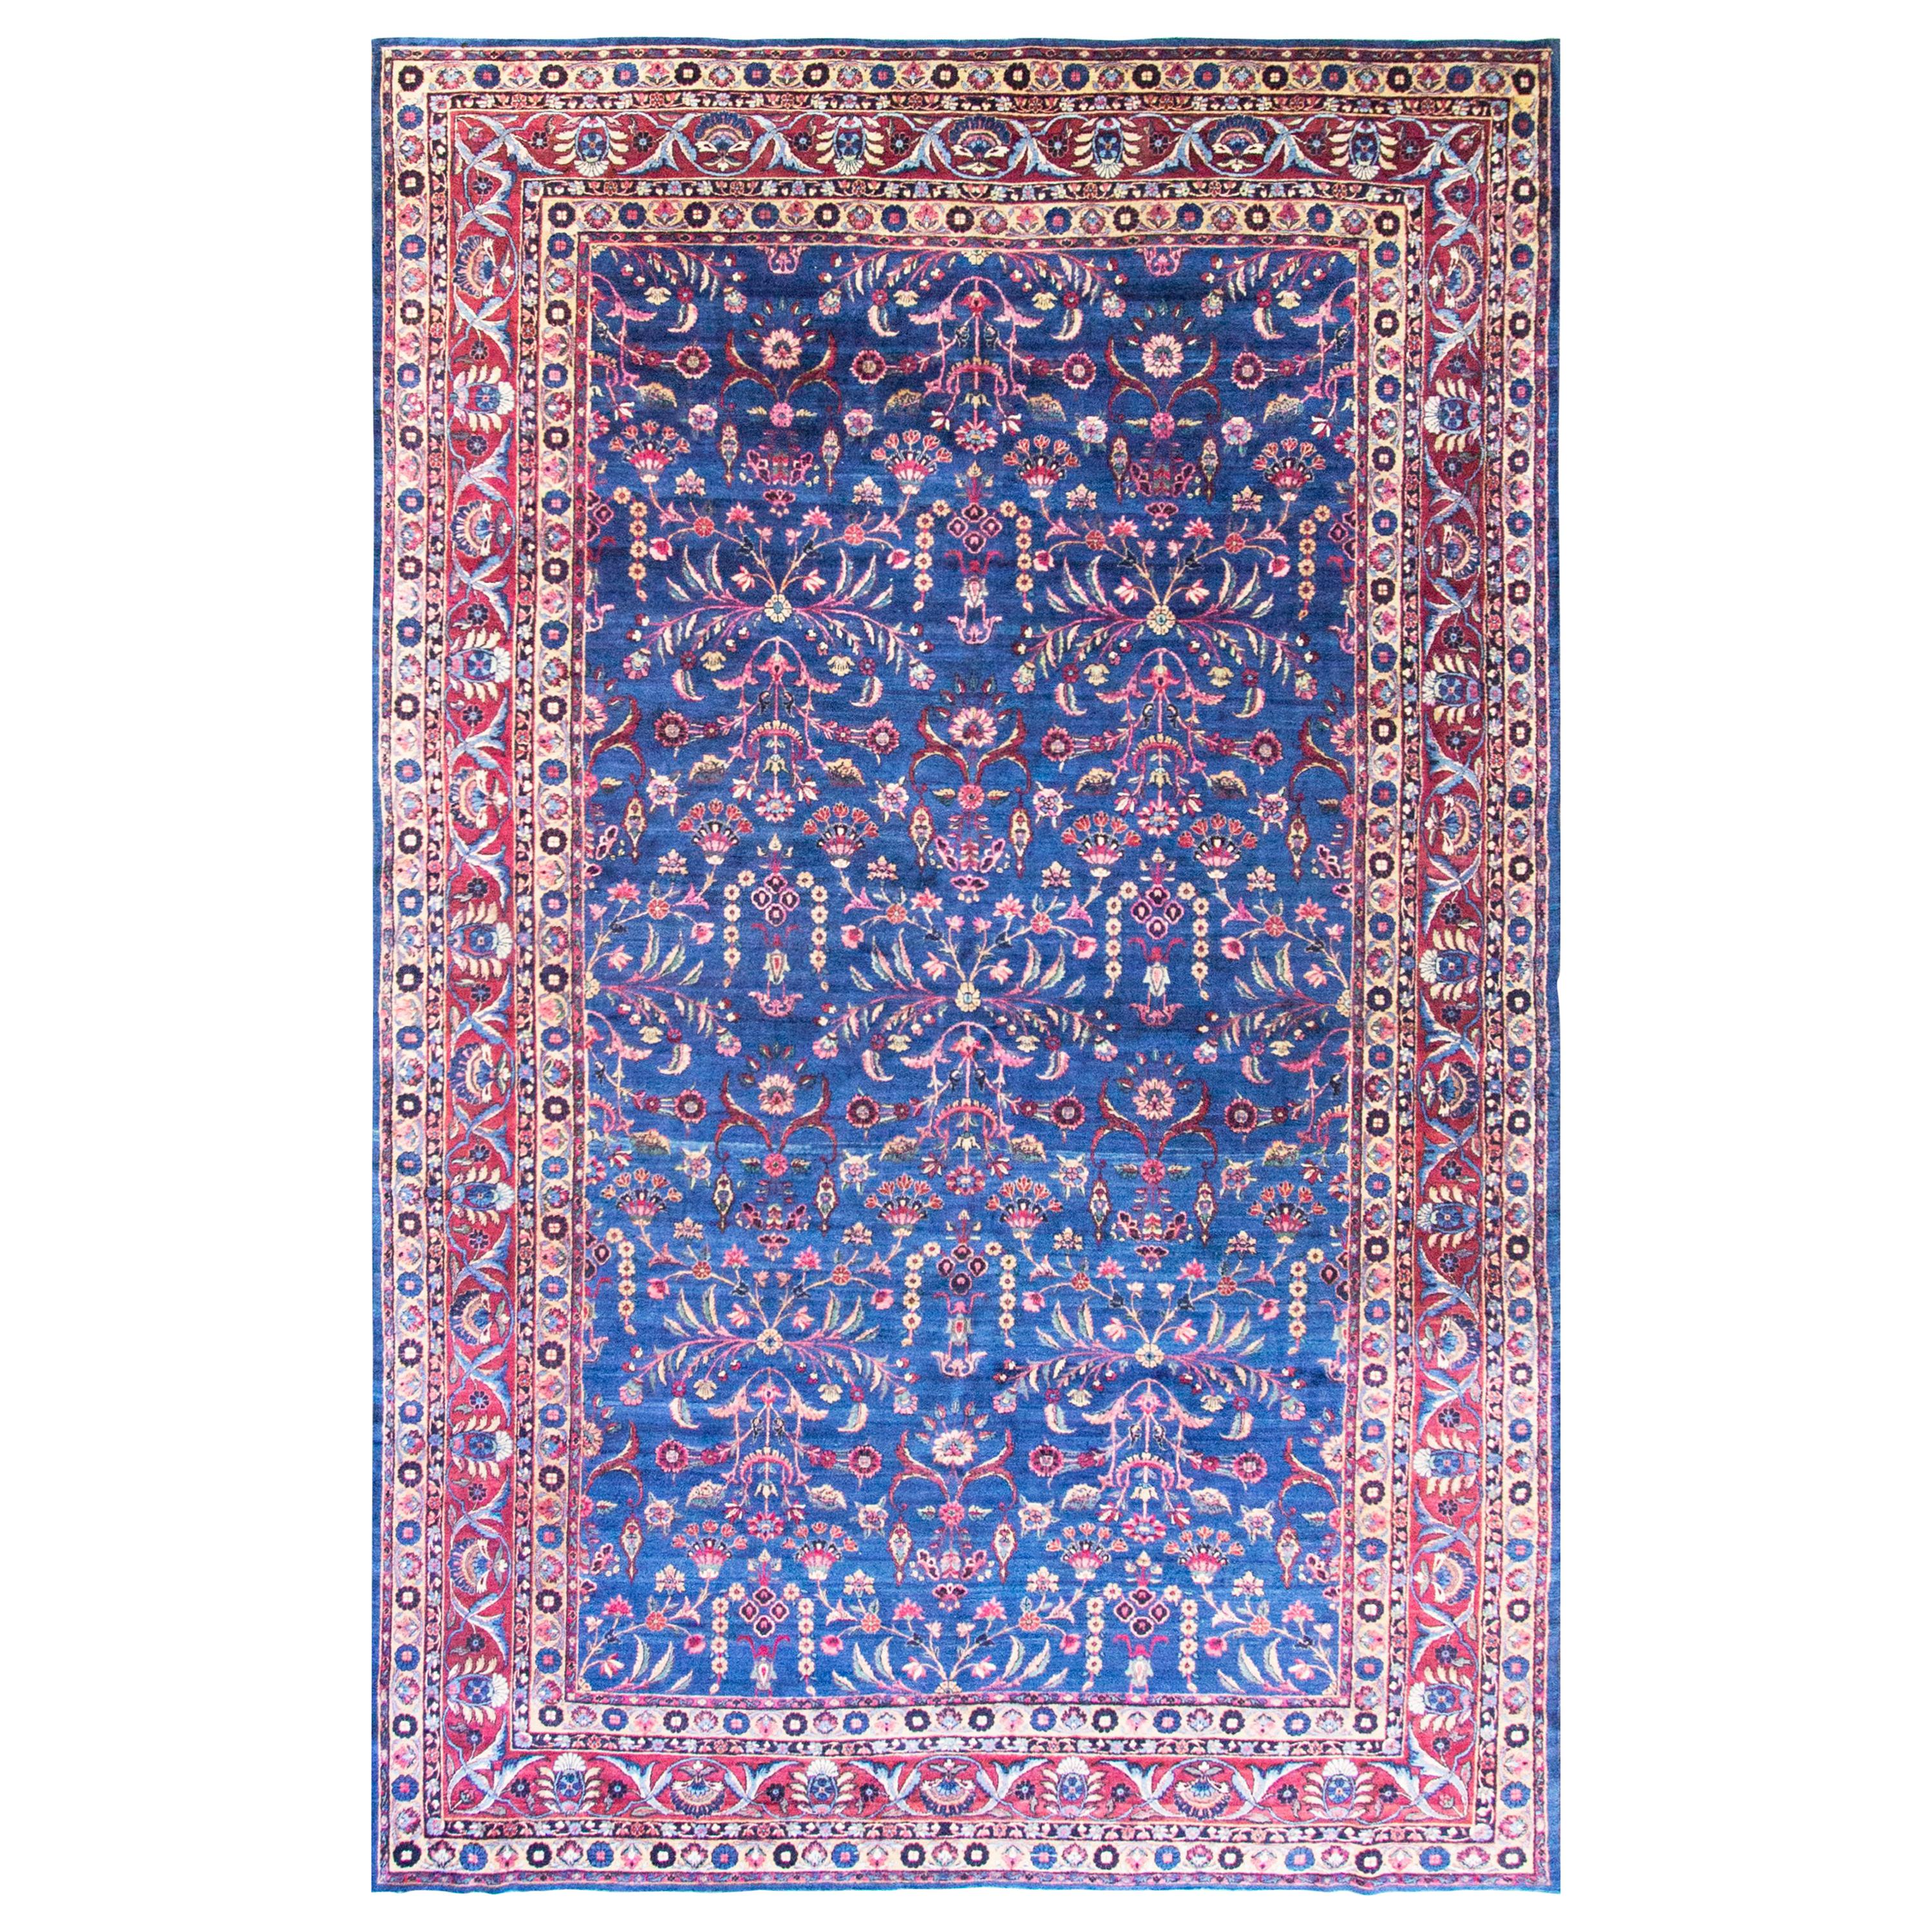 Antiker persischer Kerman-Schnitzer-Teppich in erstaunlicher Farbe